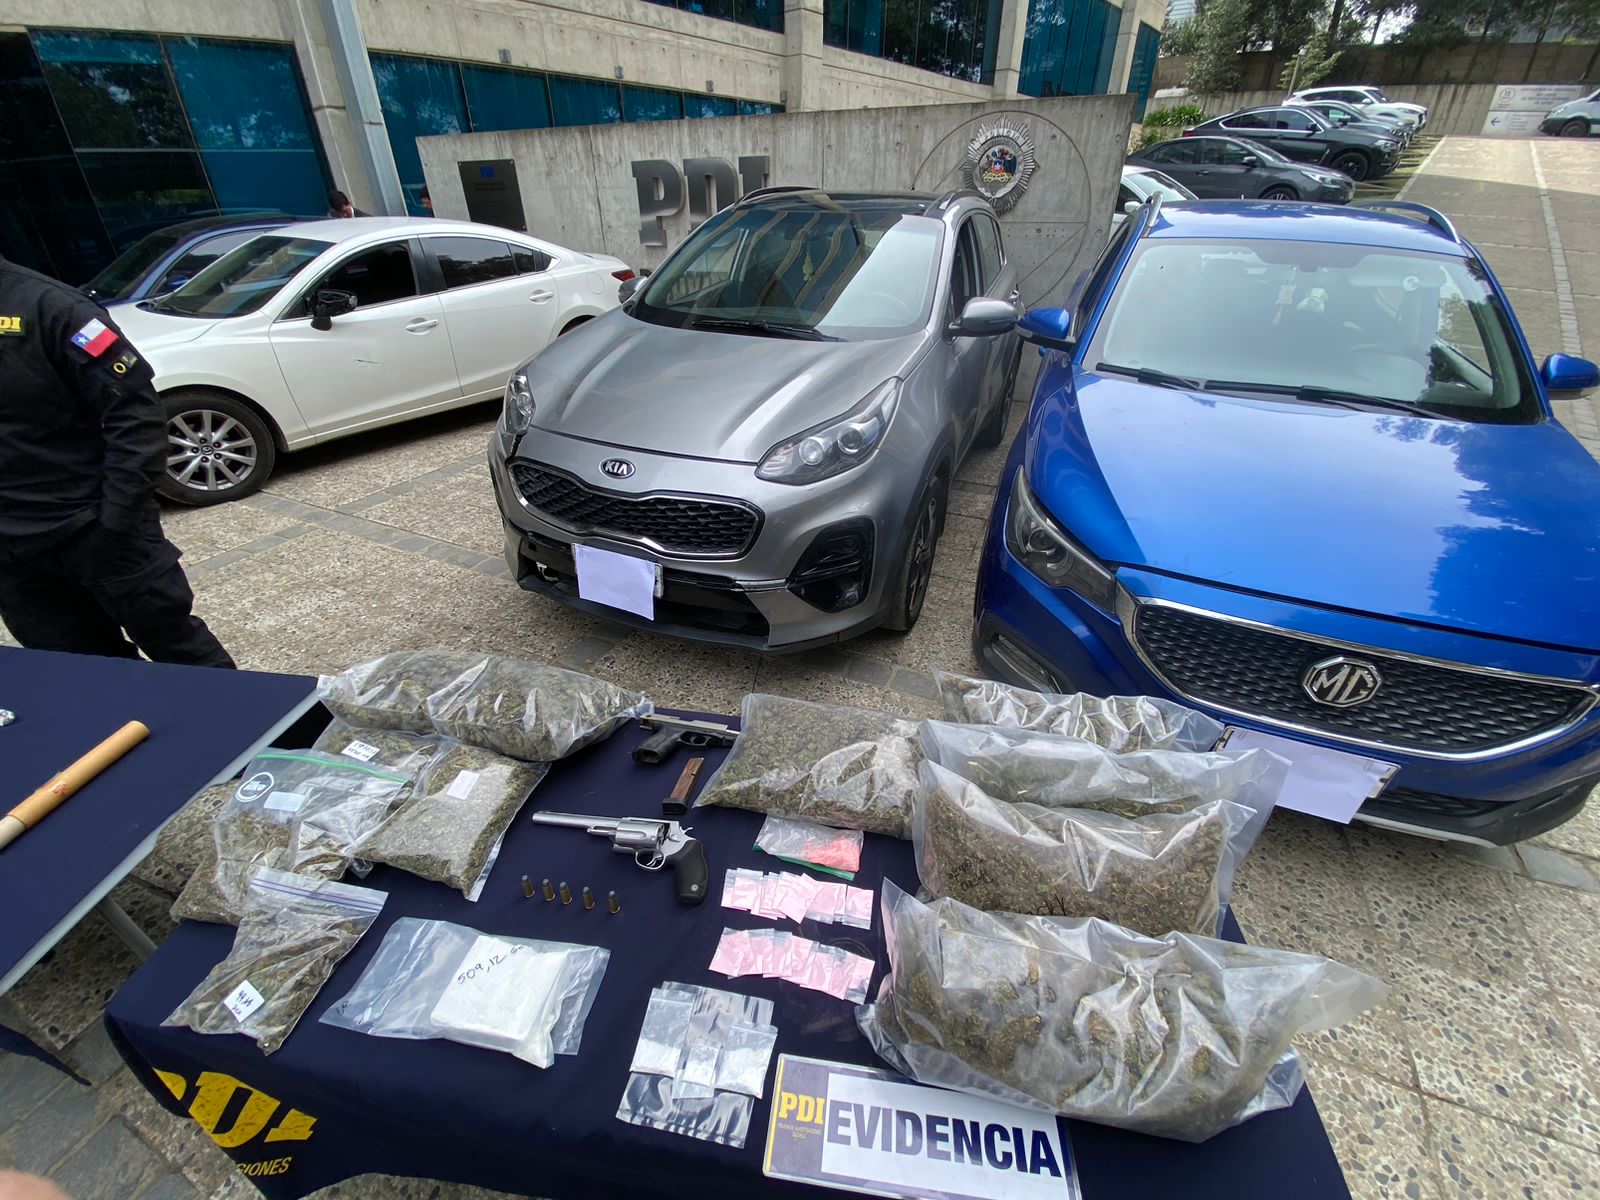 Gran cantidad de armas y drogas fueron incautados por la PDI.